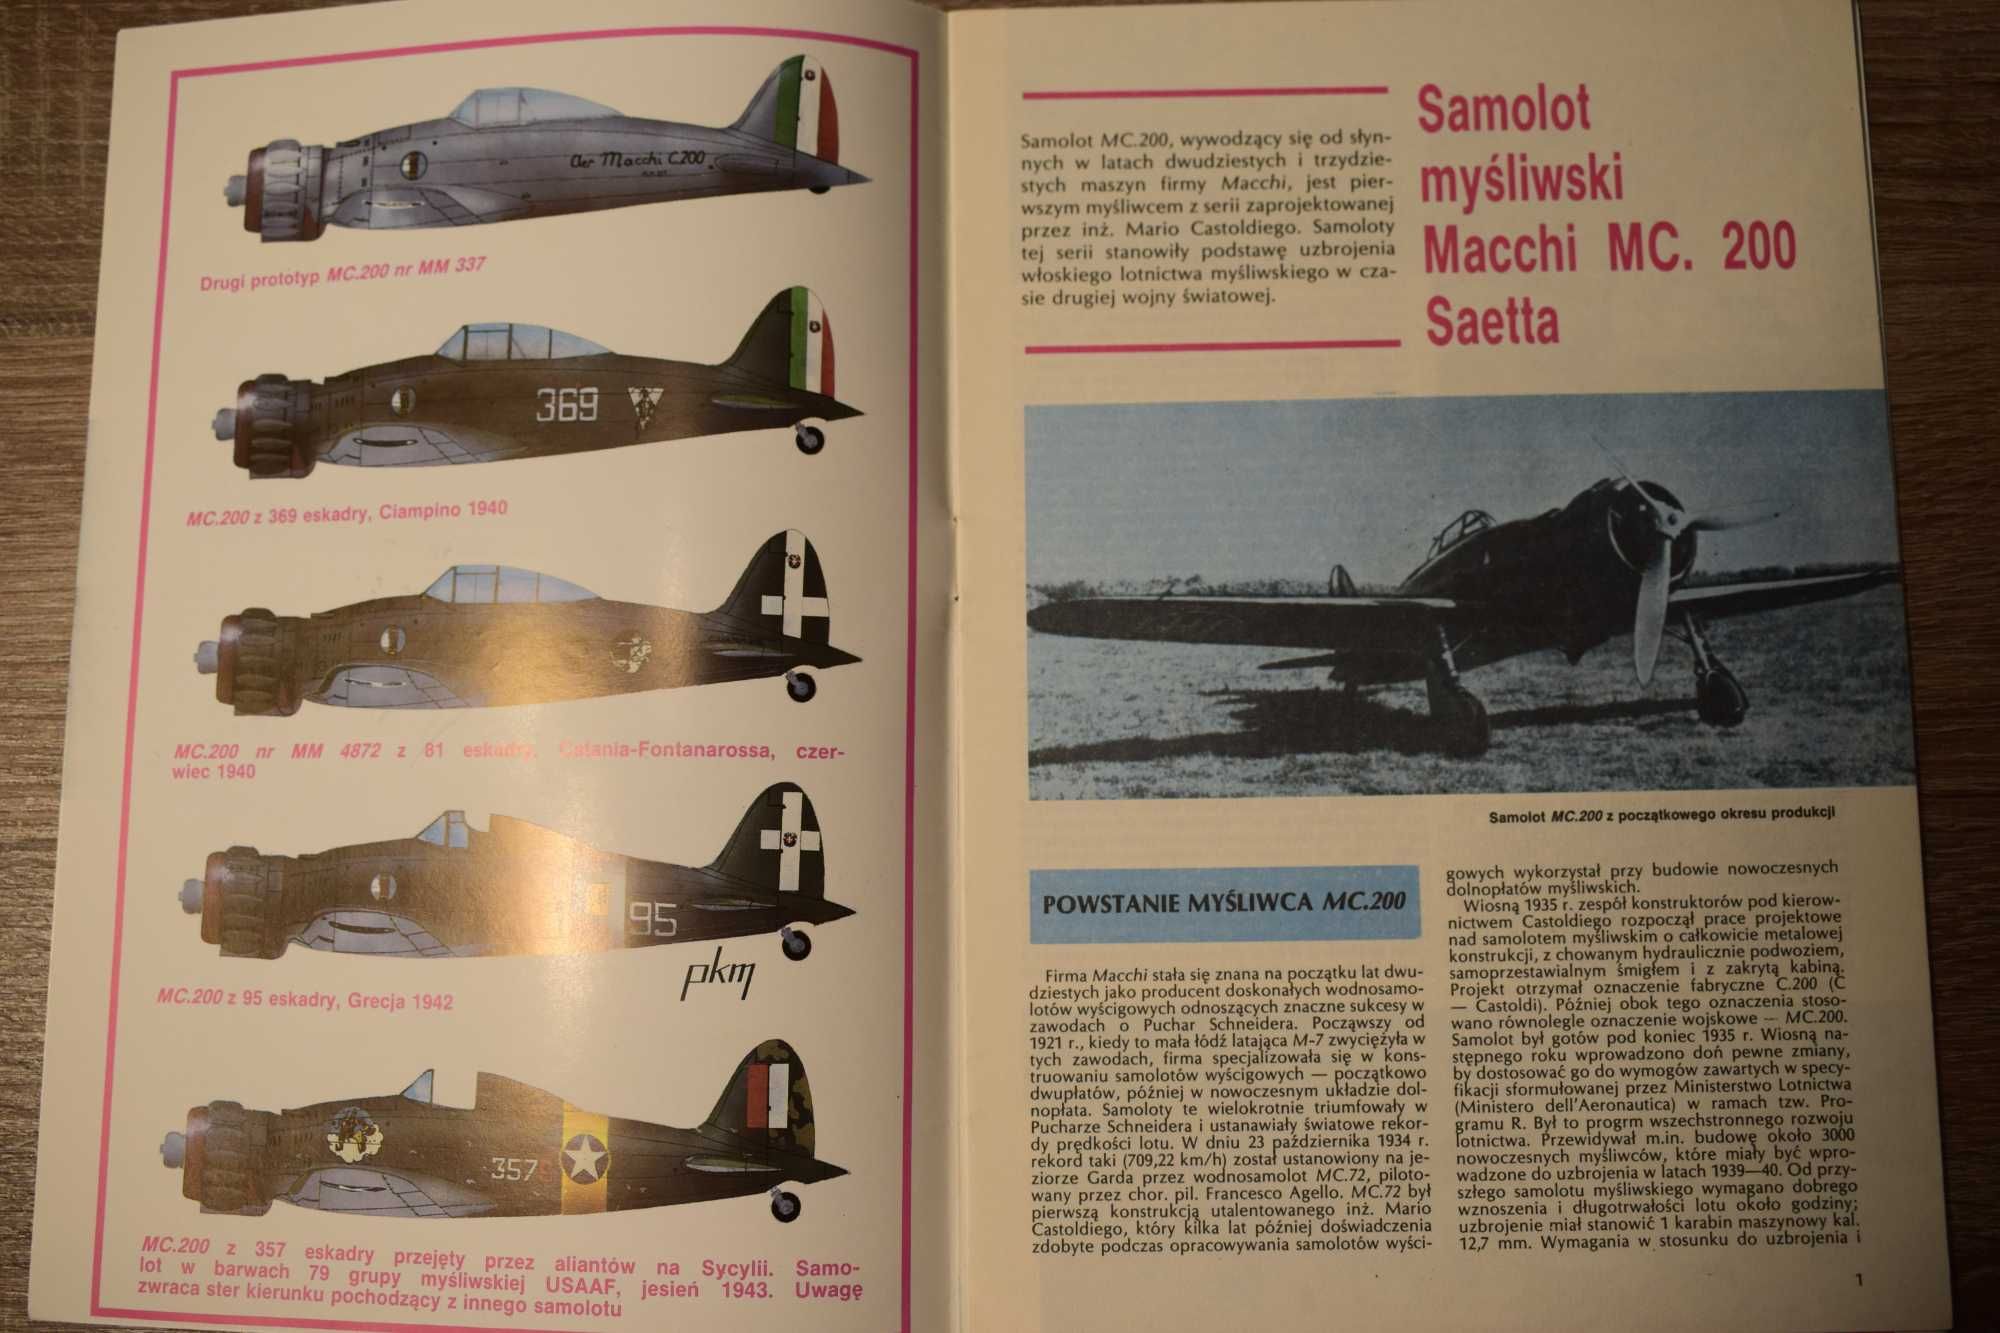 Samolot myśliwski Macchi MC. 200 Saetta - TBiU.